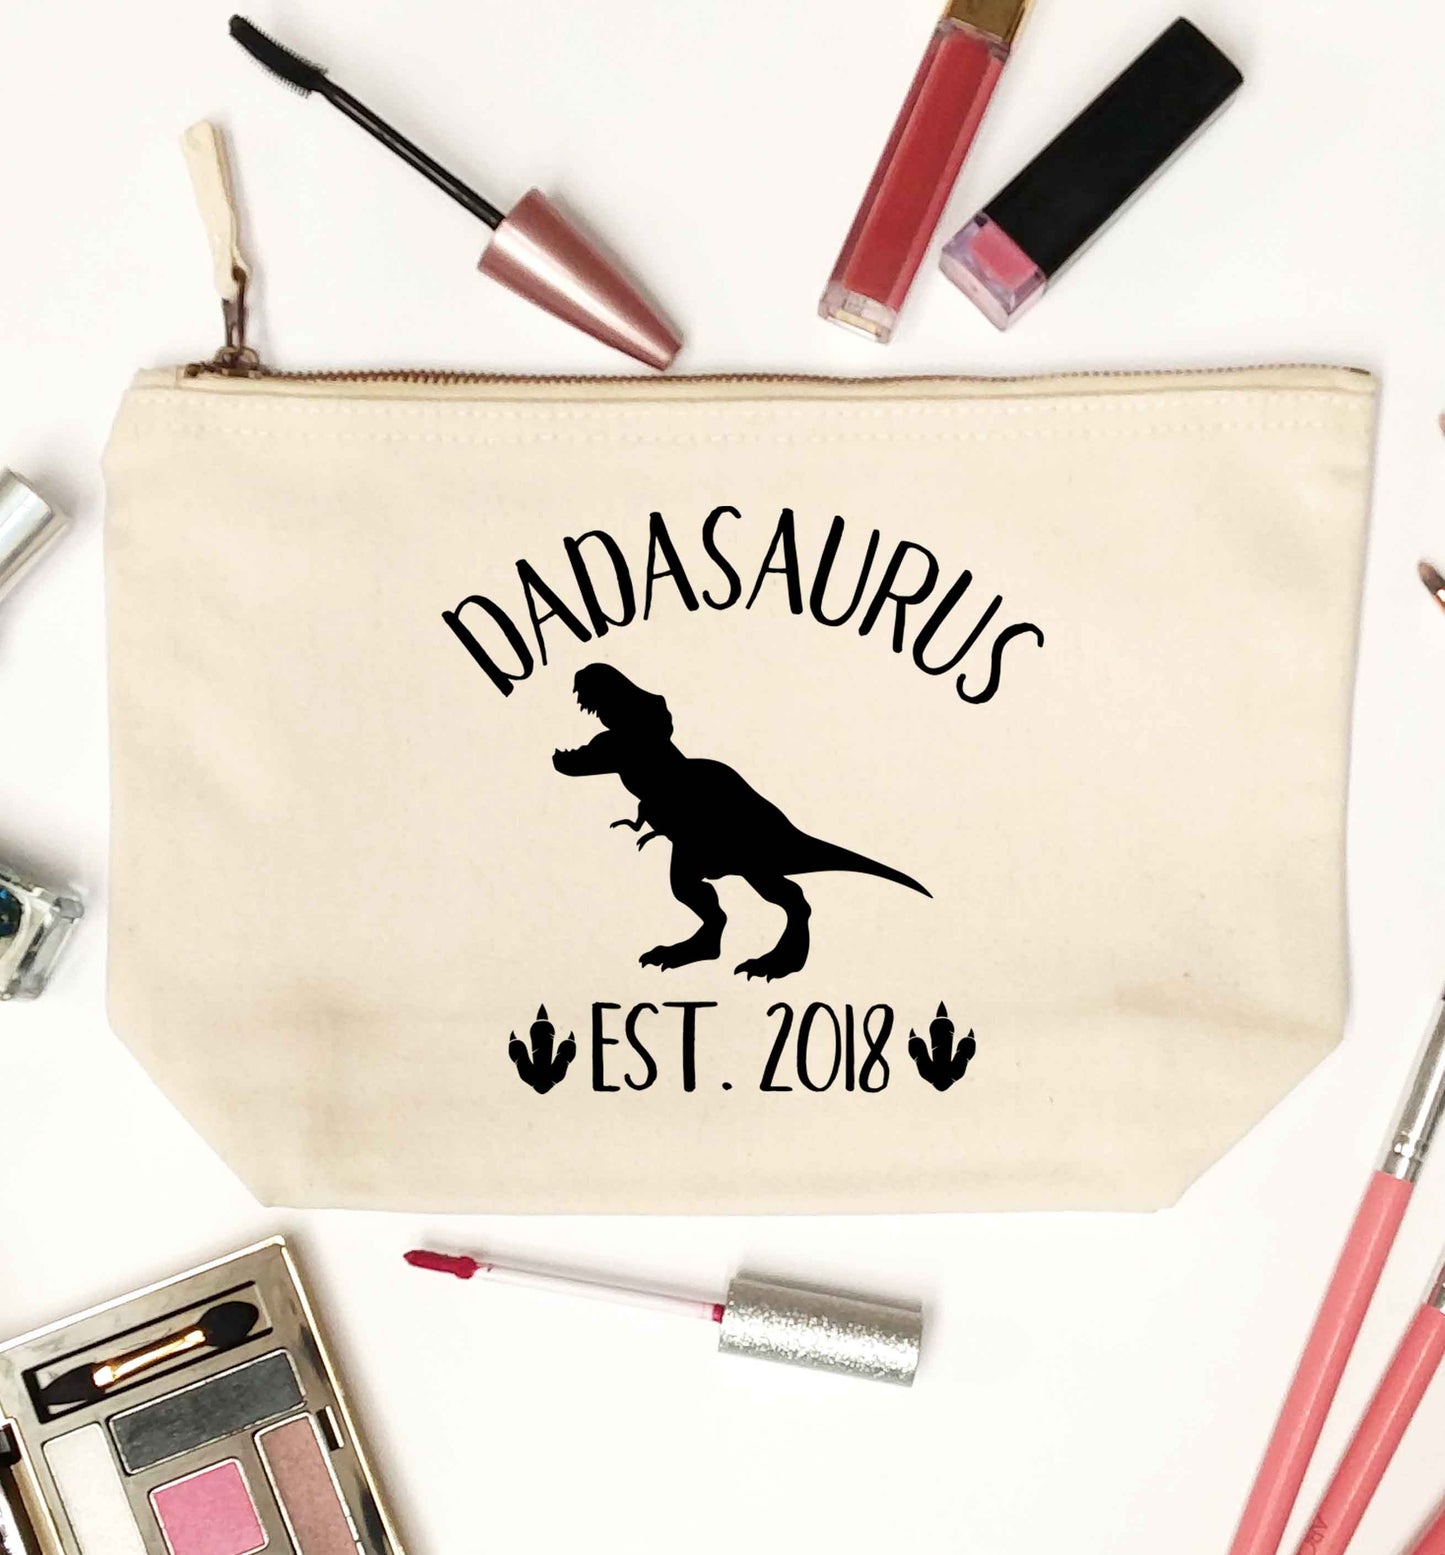 Personalised dadasaurus since (custom date) natural makeup bag